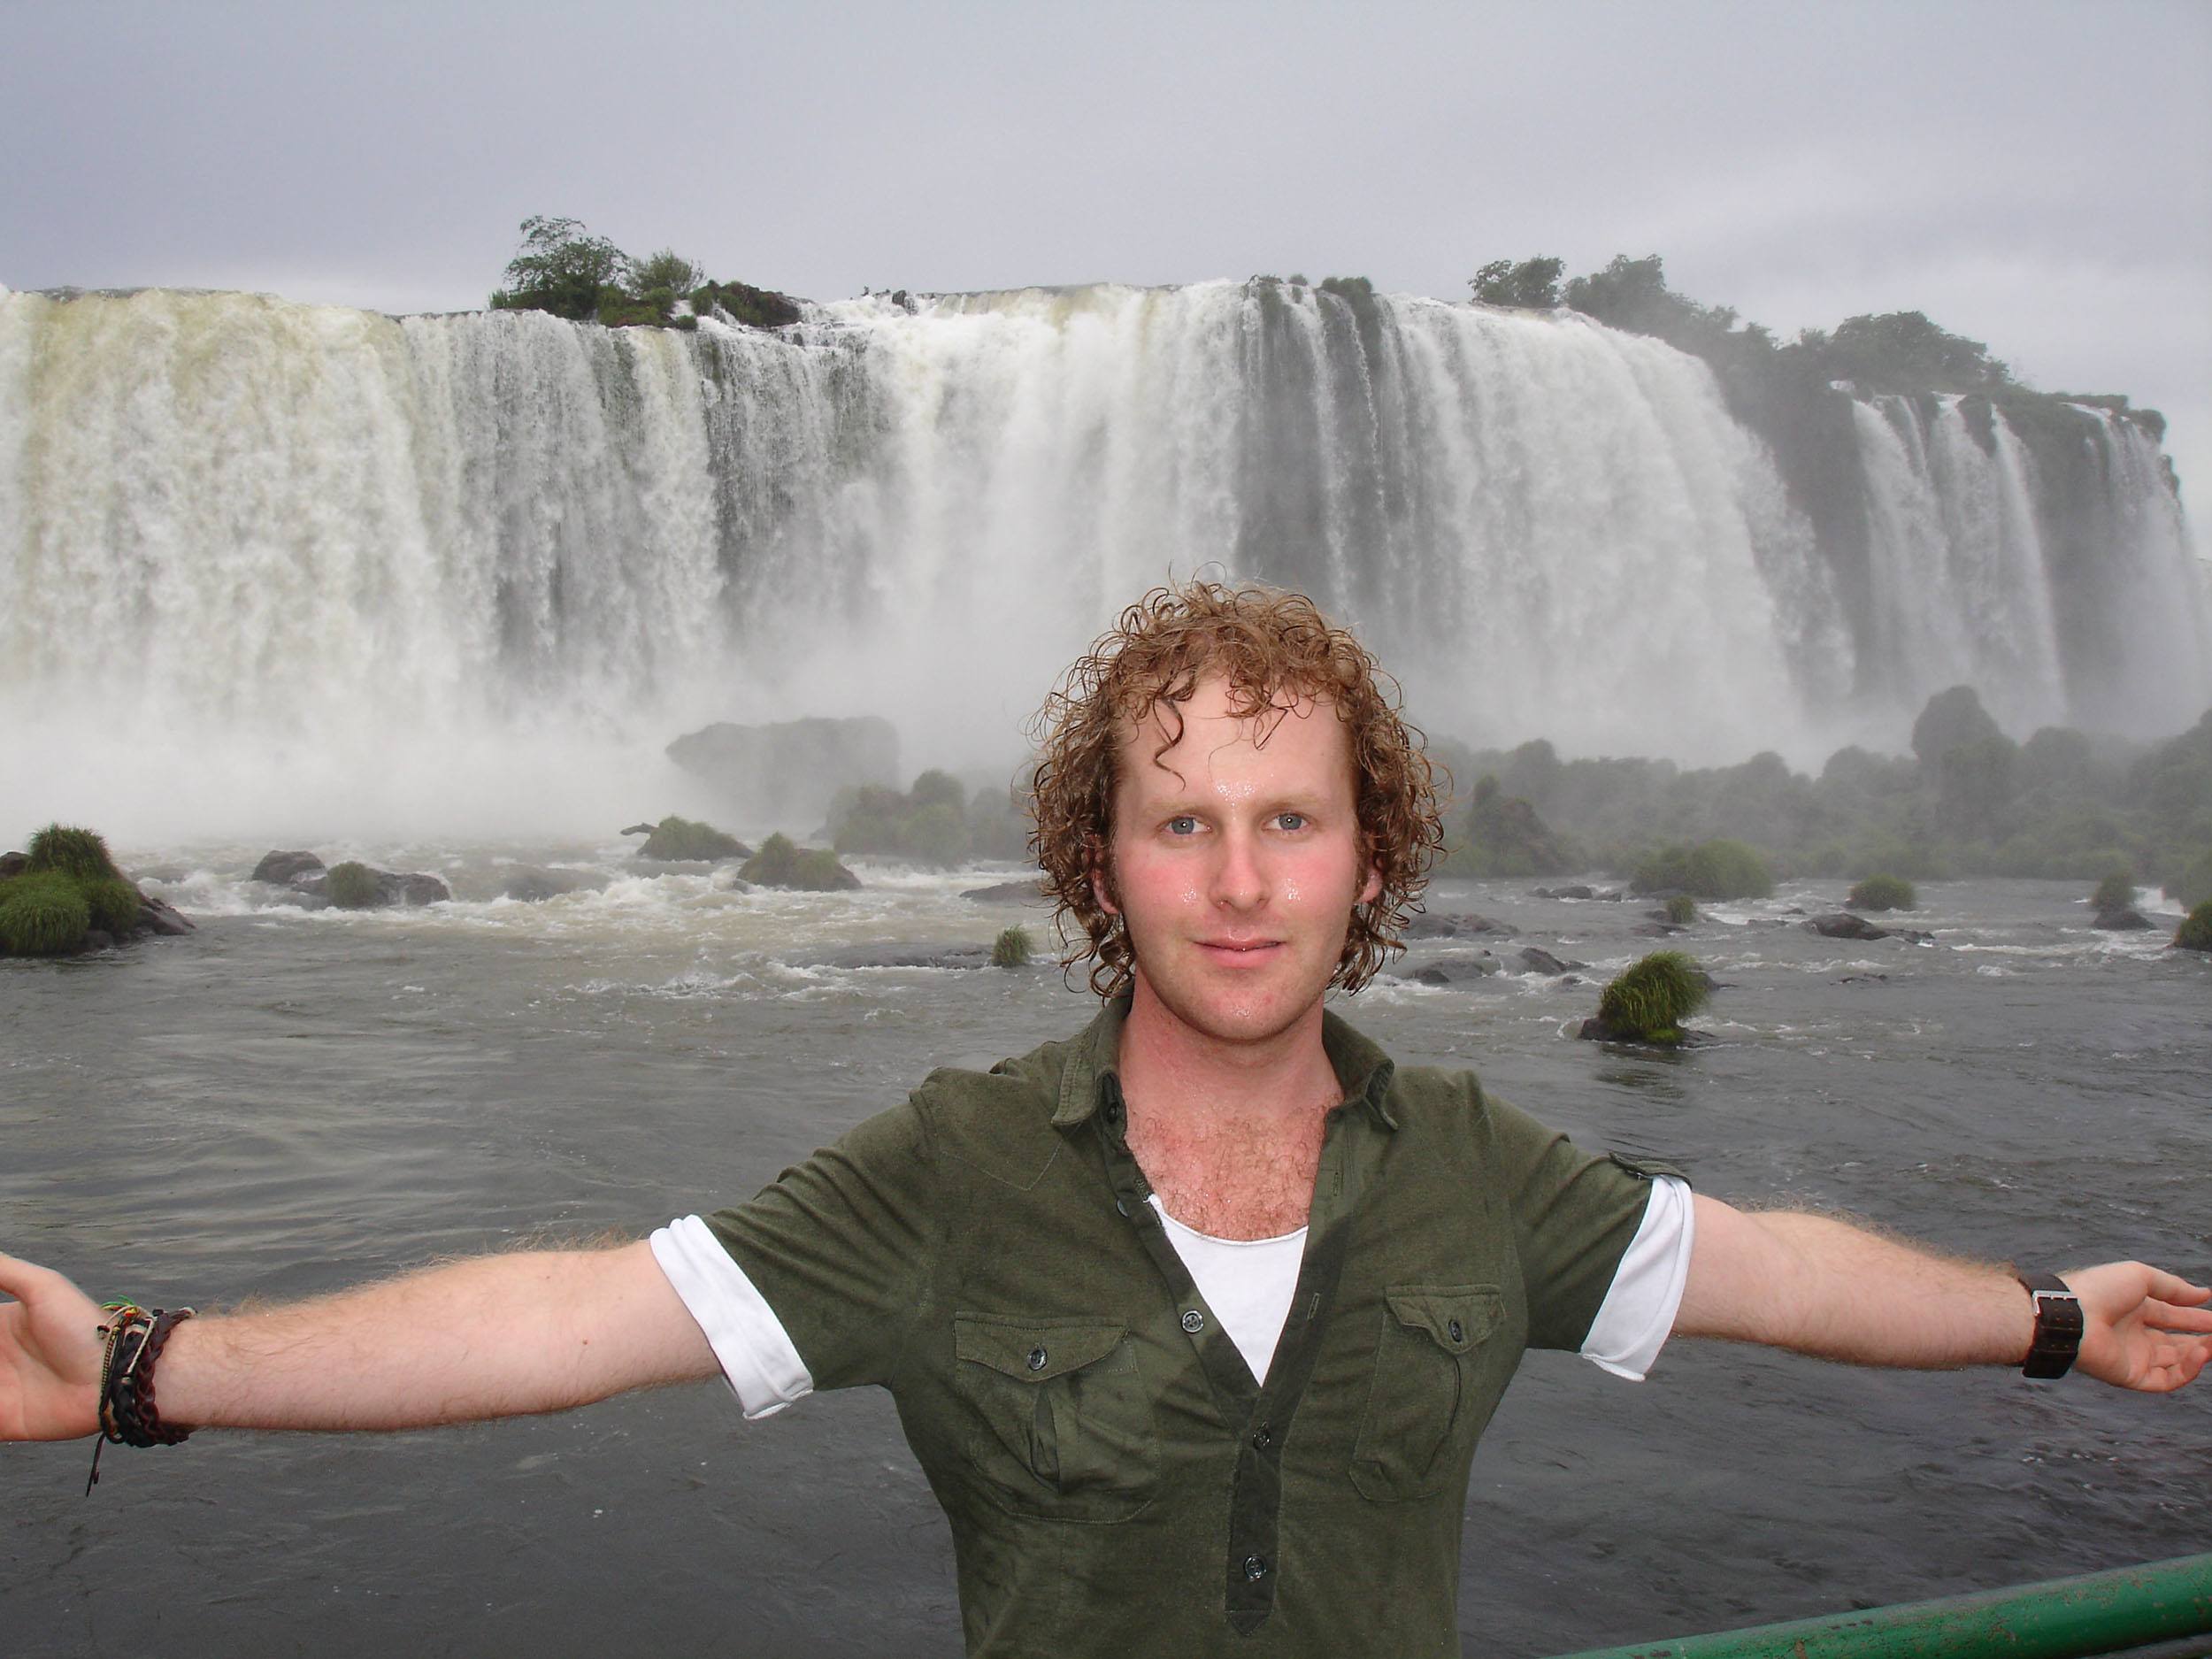 Ben standing in front of Iguazu Falls in Brazil